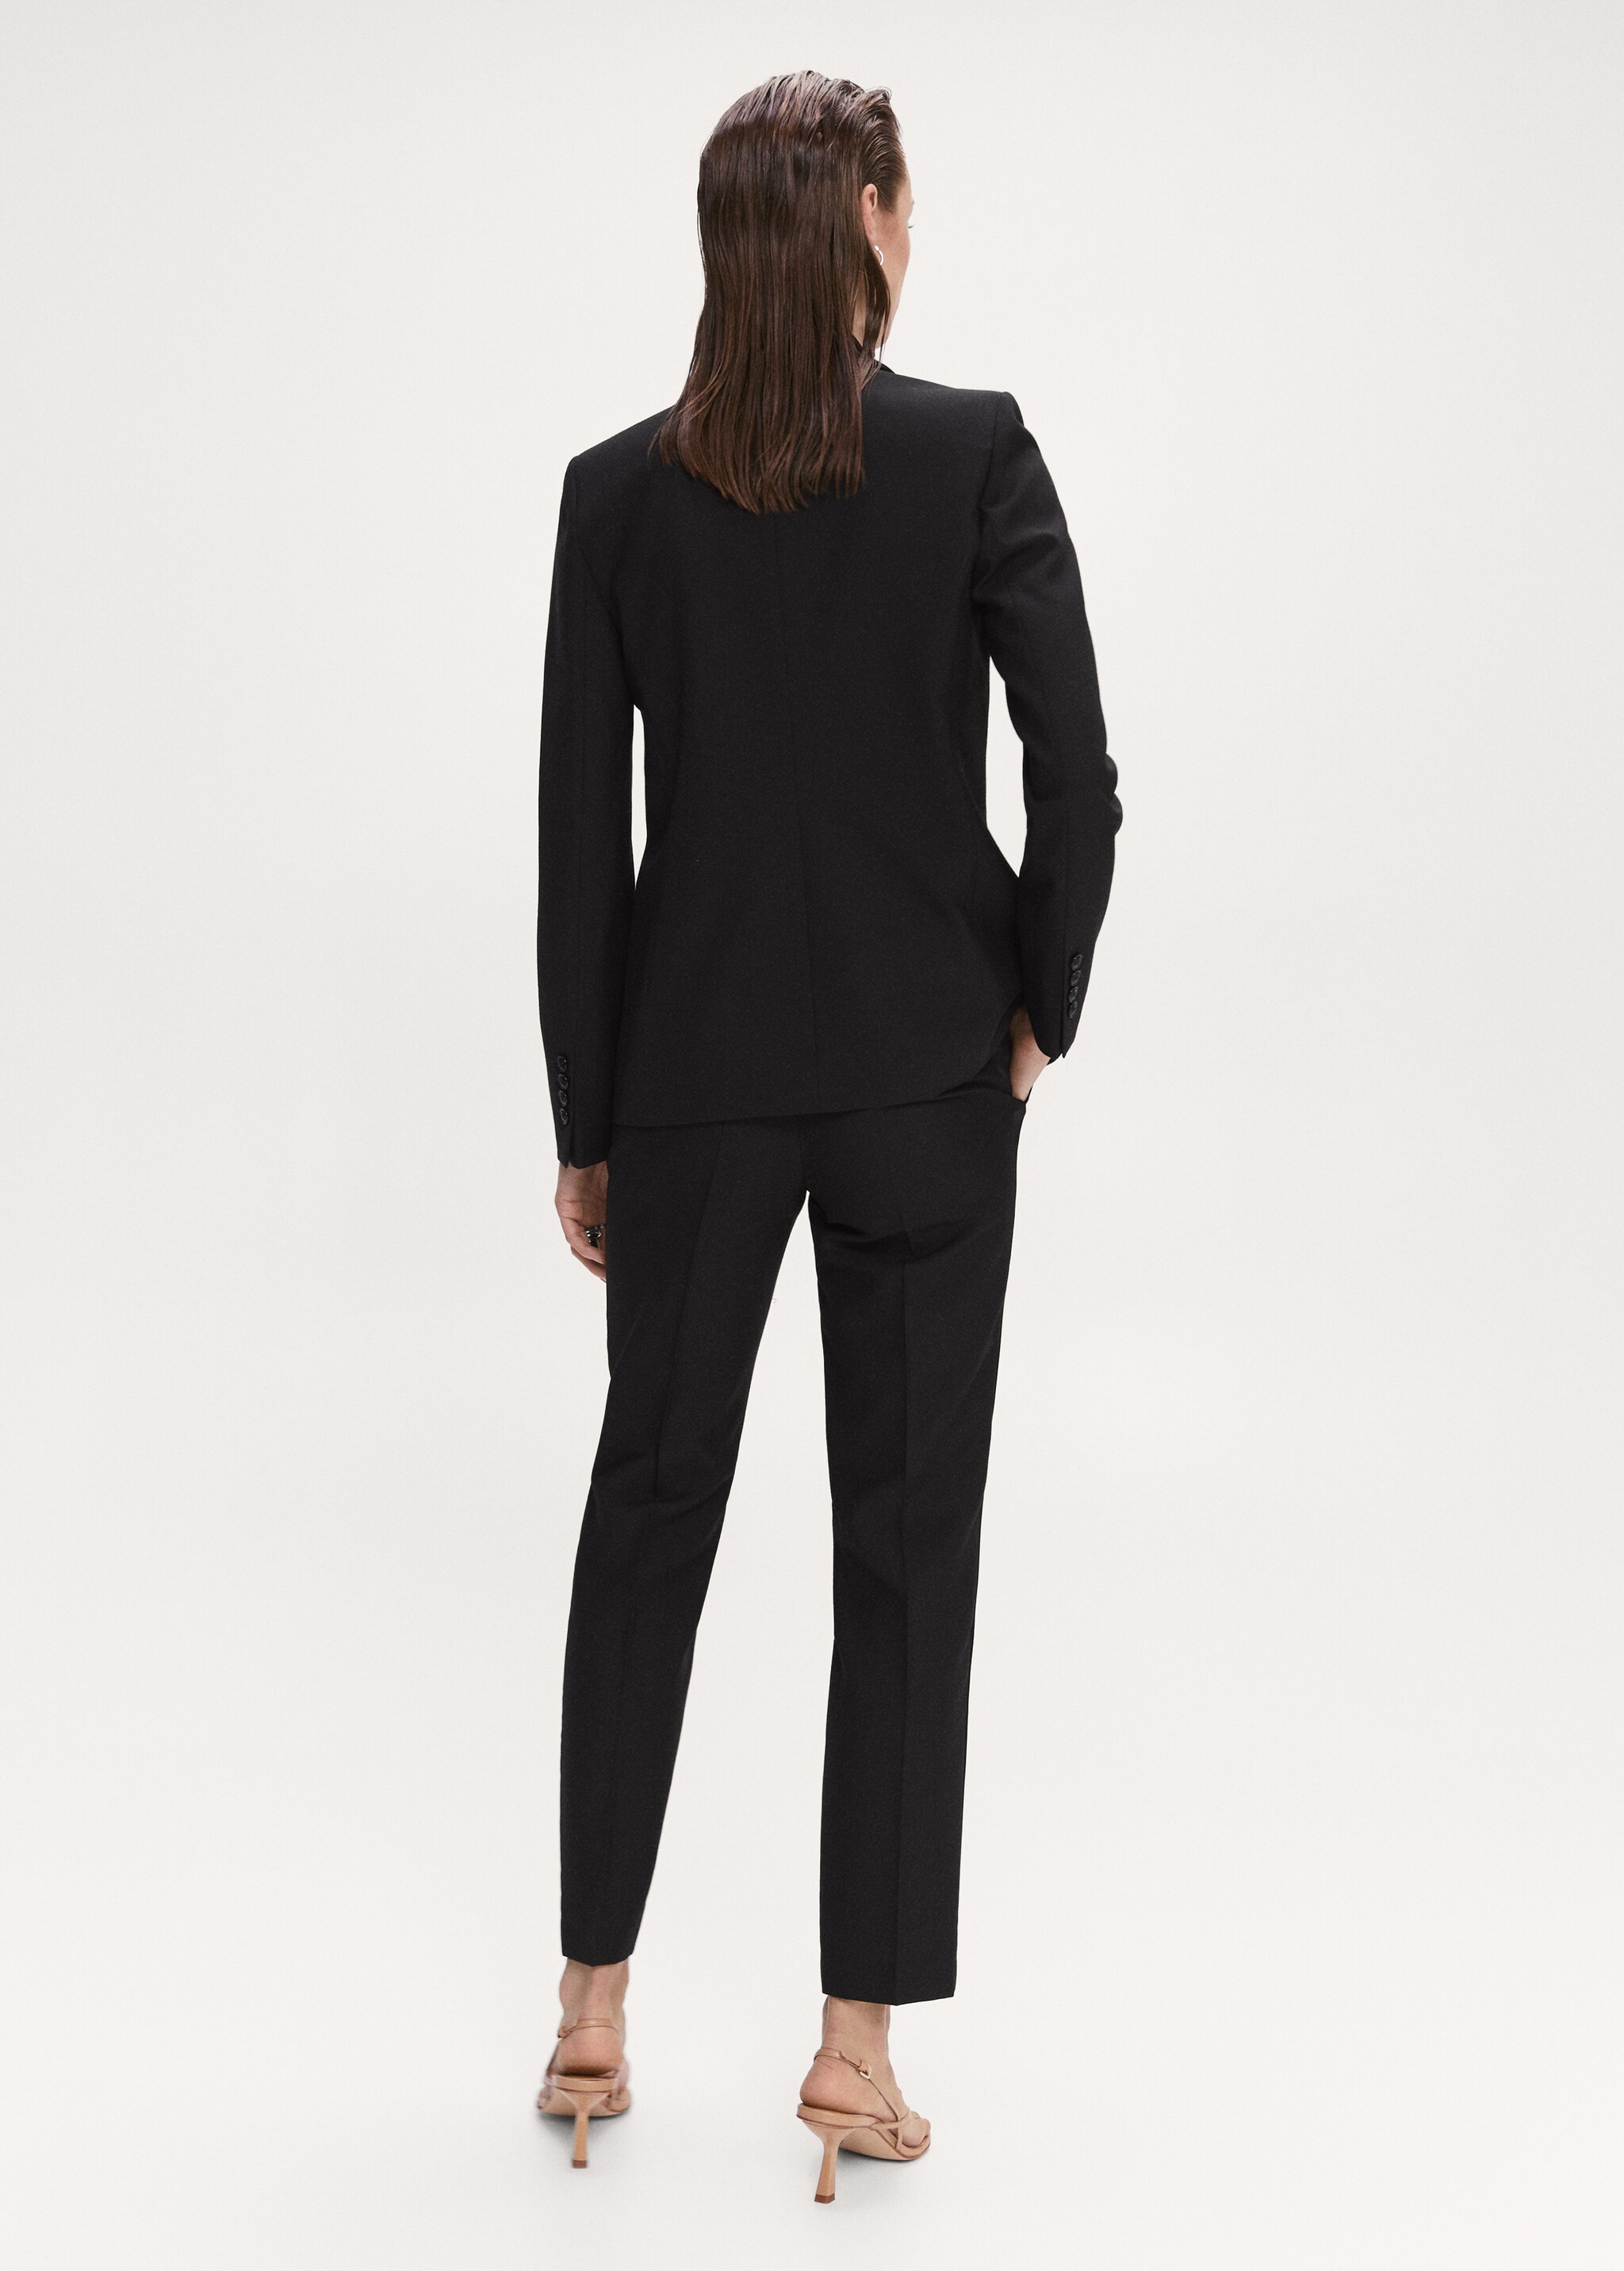 Satin lapels suit blazer - Reverse of the article